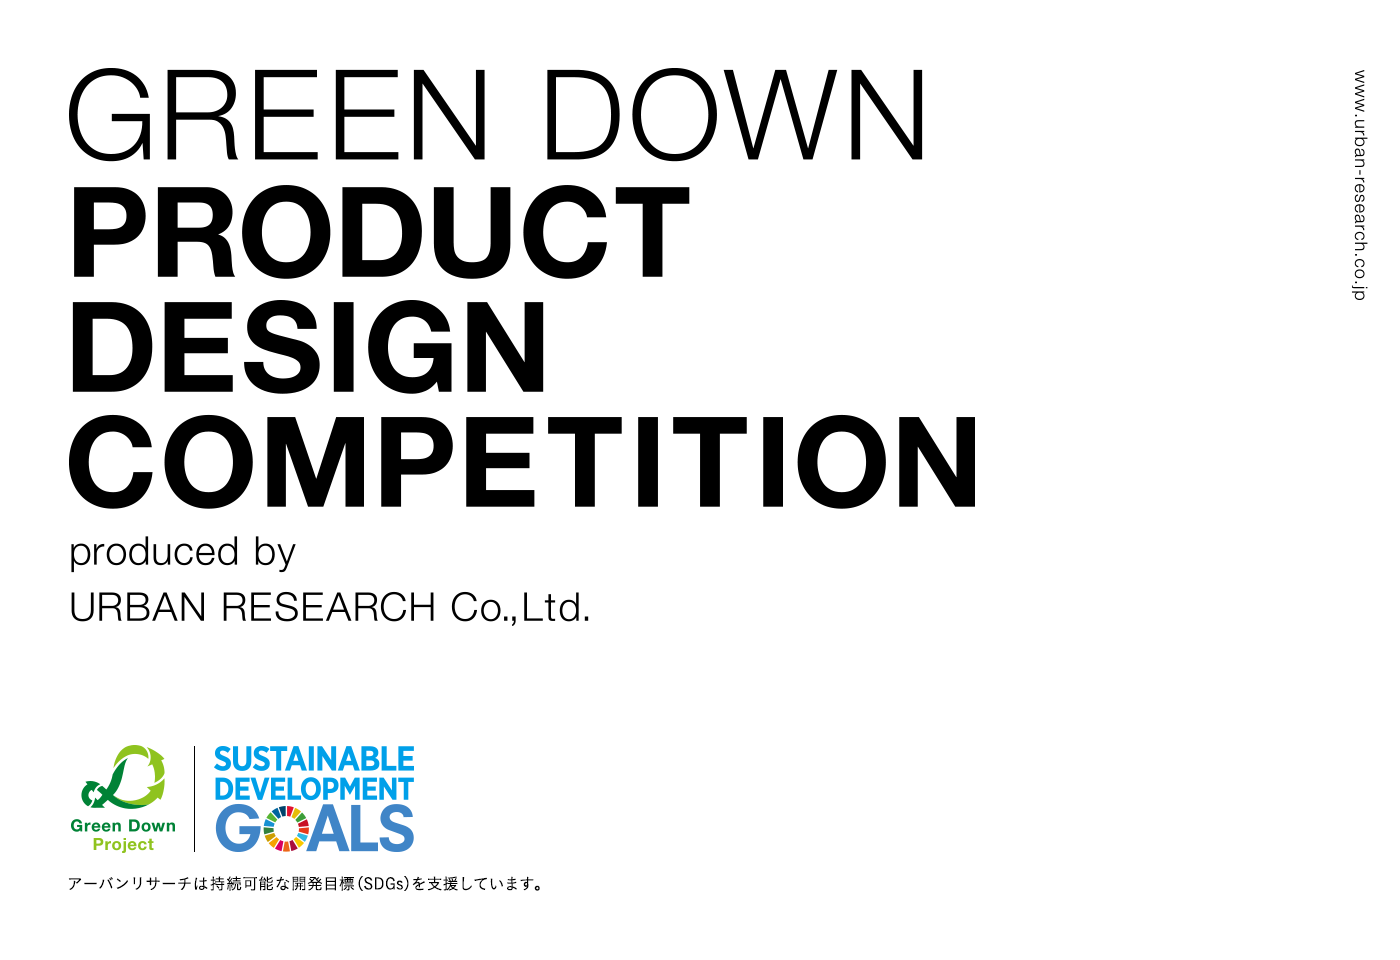 第二回GREEN DOWN PRODUCT DESIGN COMPETITION 受賞作品発表